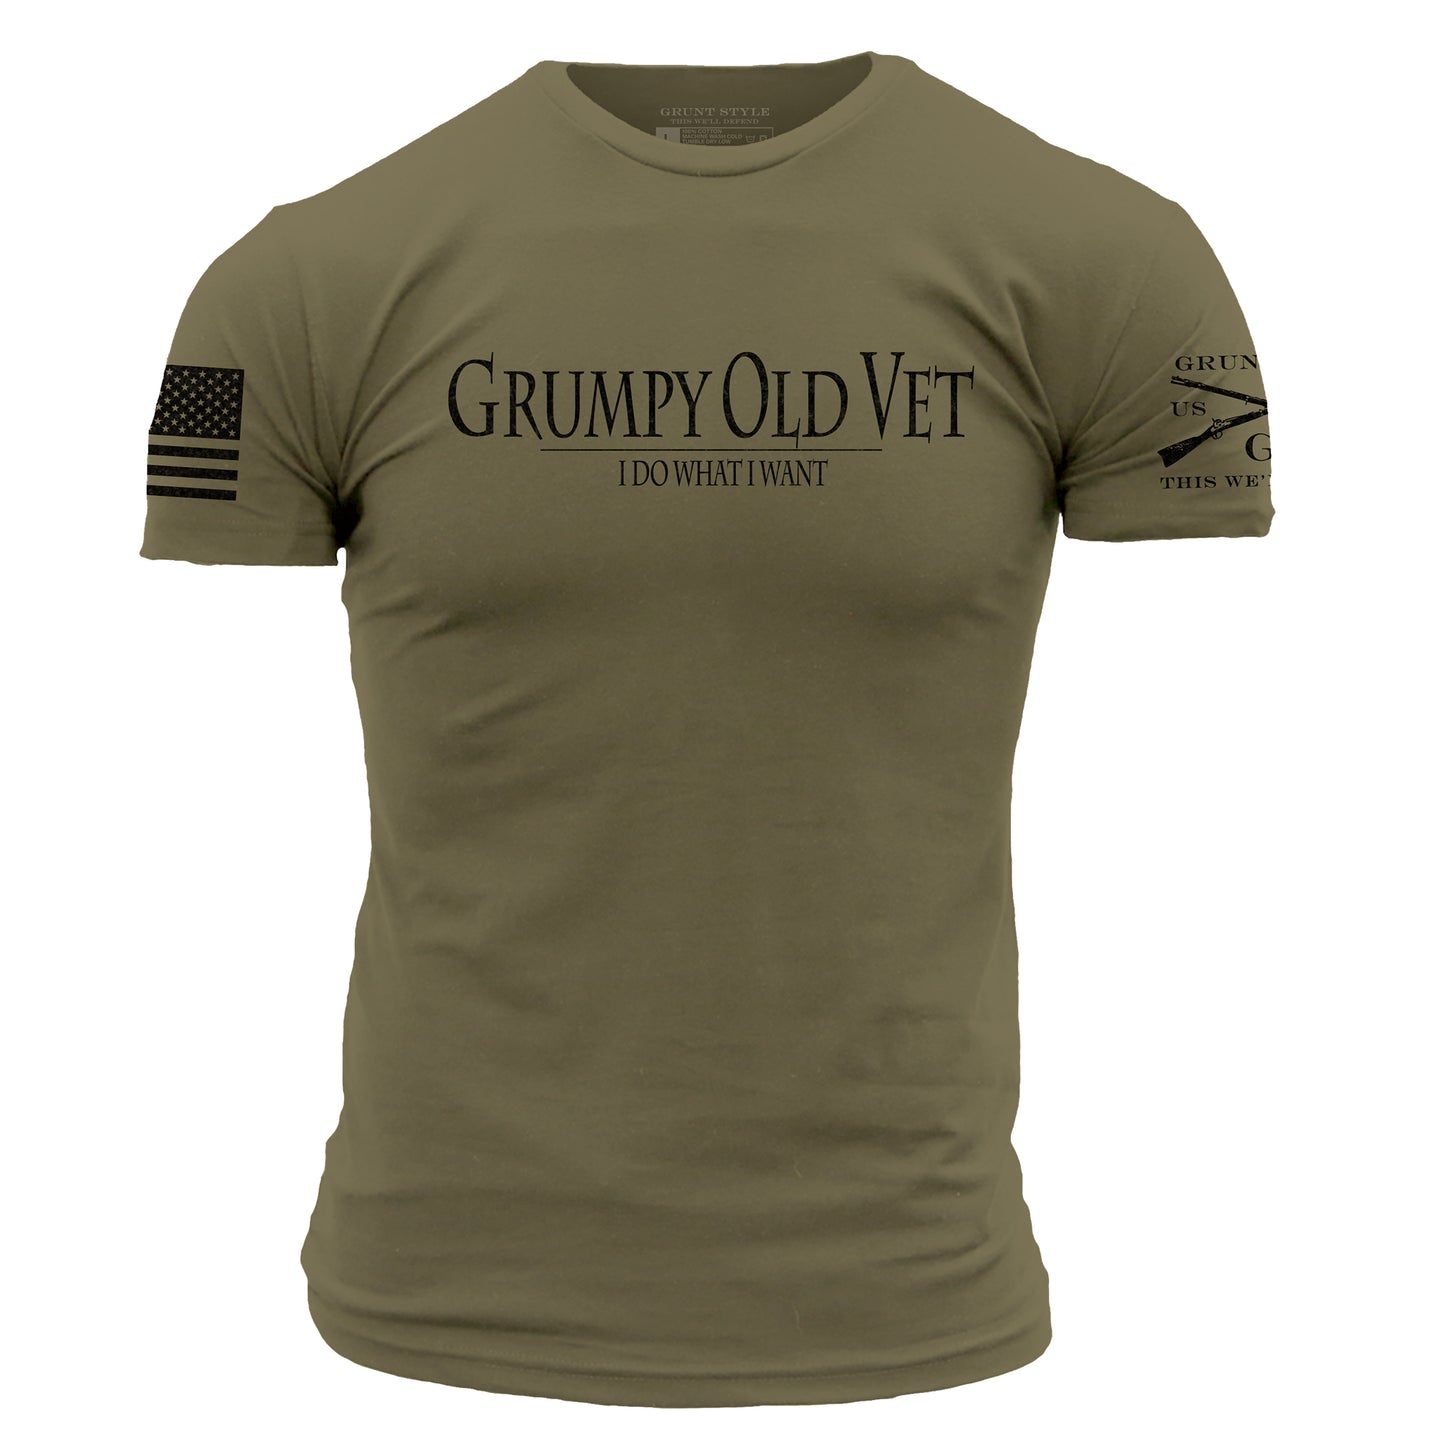 military shirts - tshirt bundle deal 